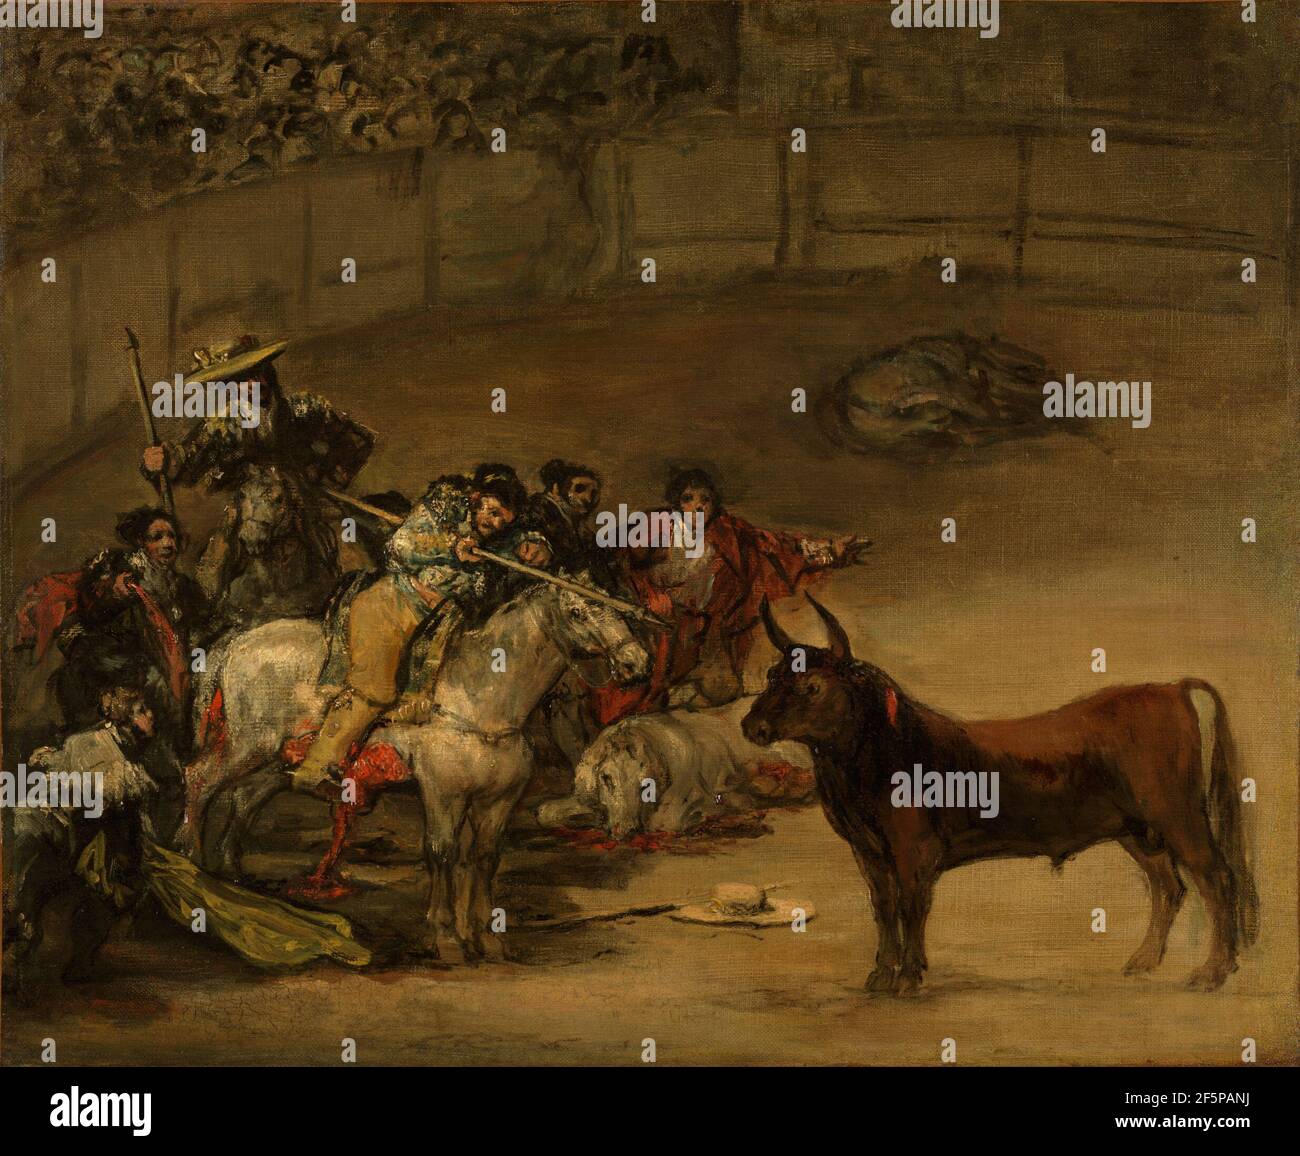 Corrida, Suerte de Varas. Francisco José de Goya y Lucientes (Francisco de Goya) (Spagnolo, 1746 - 1828) Foto Stock